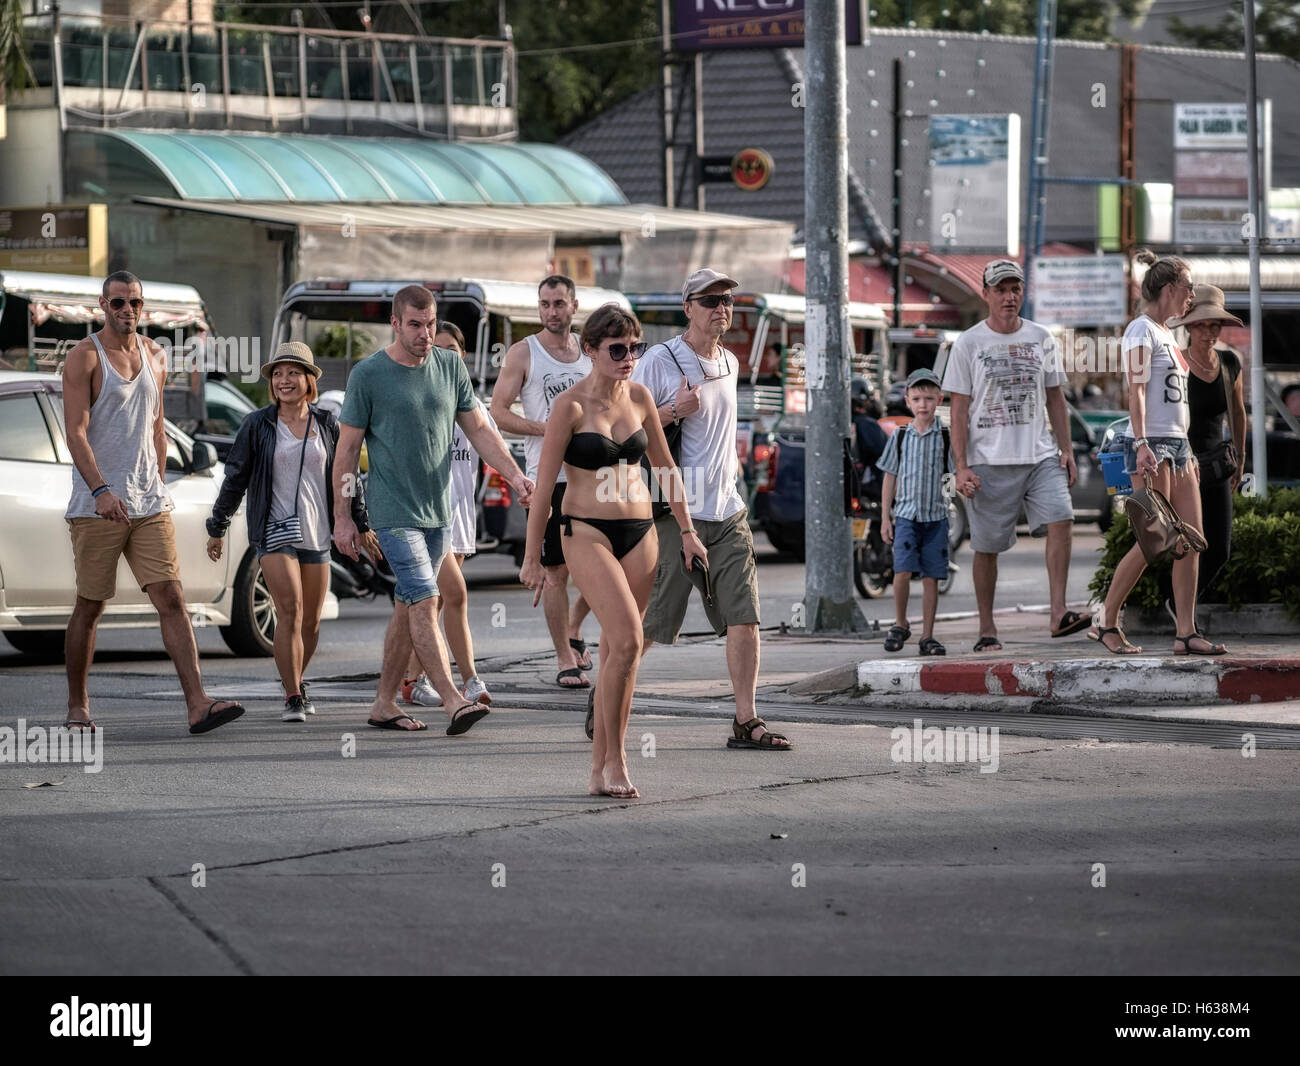 Bikinizone. Sich von der Masse abheben. Frau in Bikiniverkleidete auf der Straße, die amüsante Blicke von Zuschauern zieht. Pattaya Thailand S. E. Asien Stockfoto